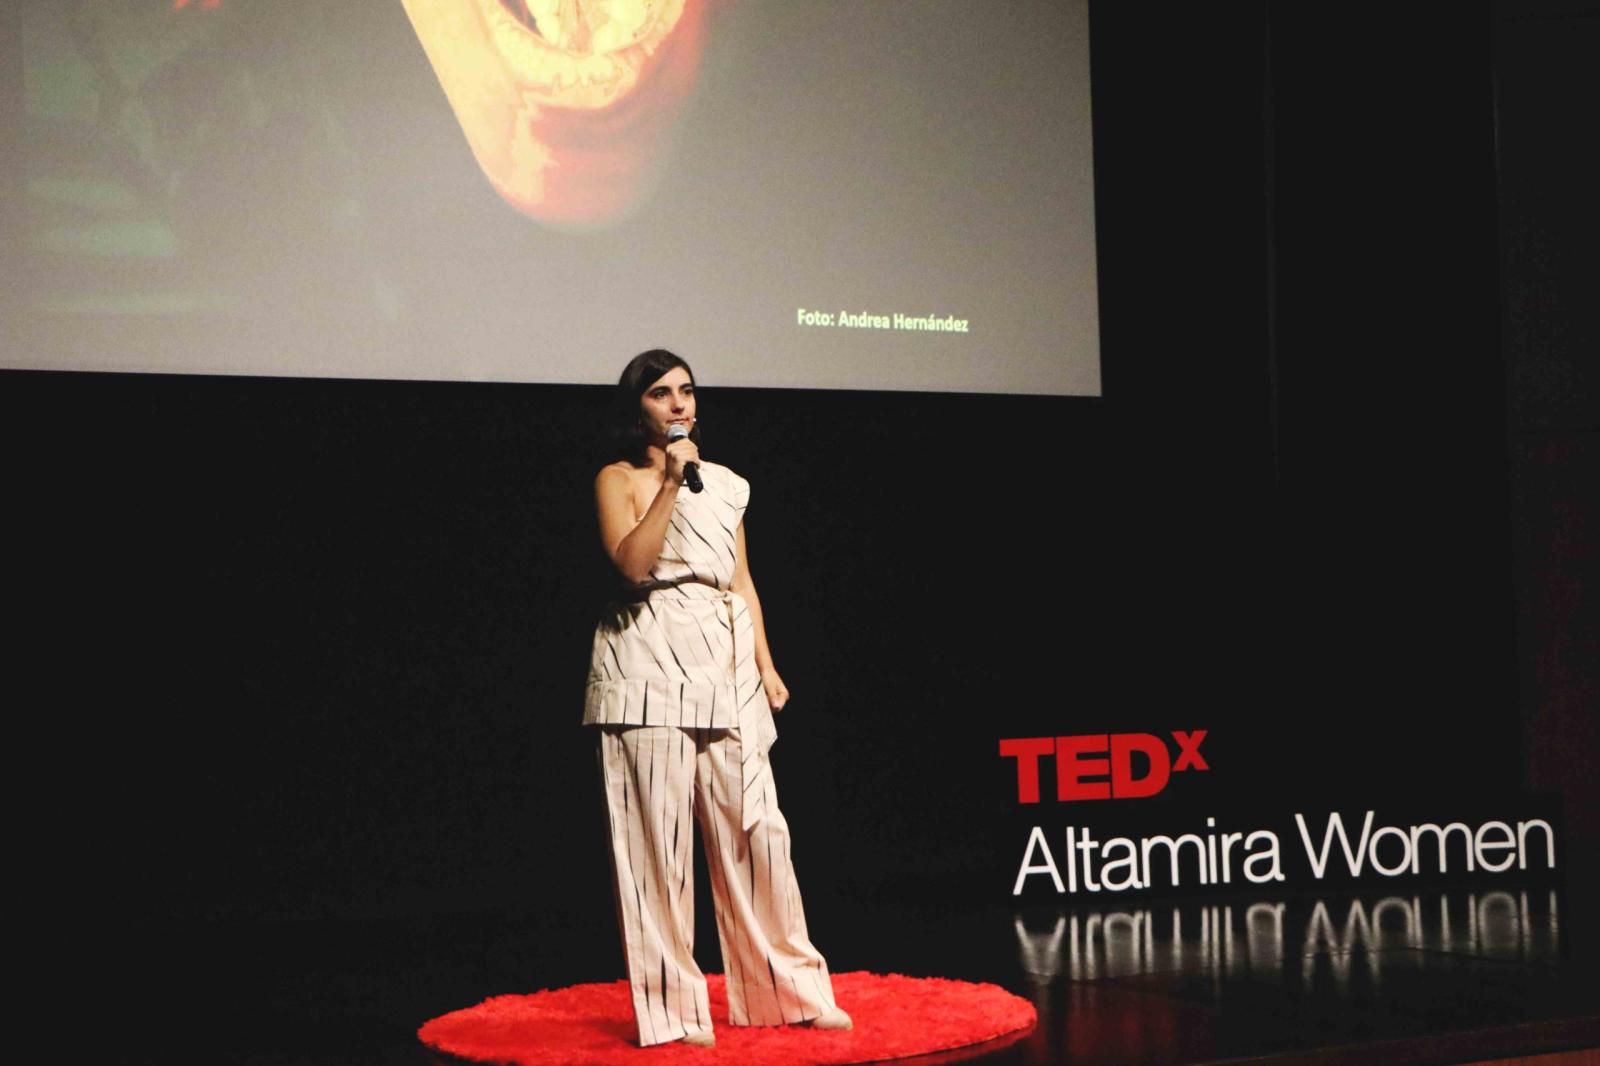 TEDx Talk About Sisterhood and Female Leadership